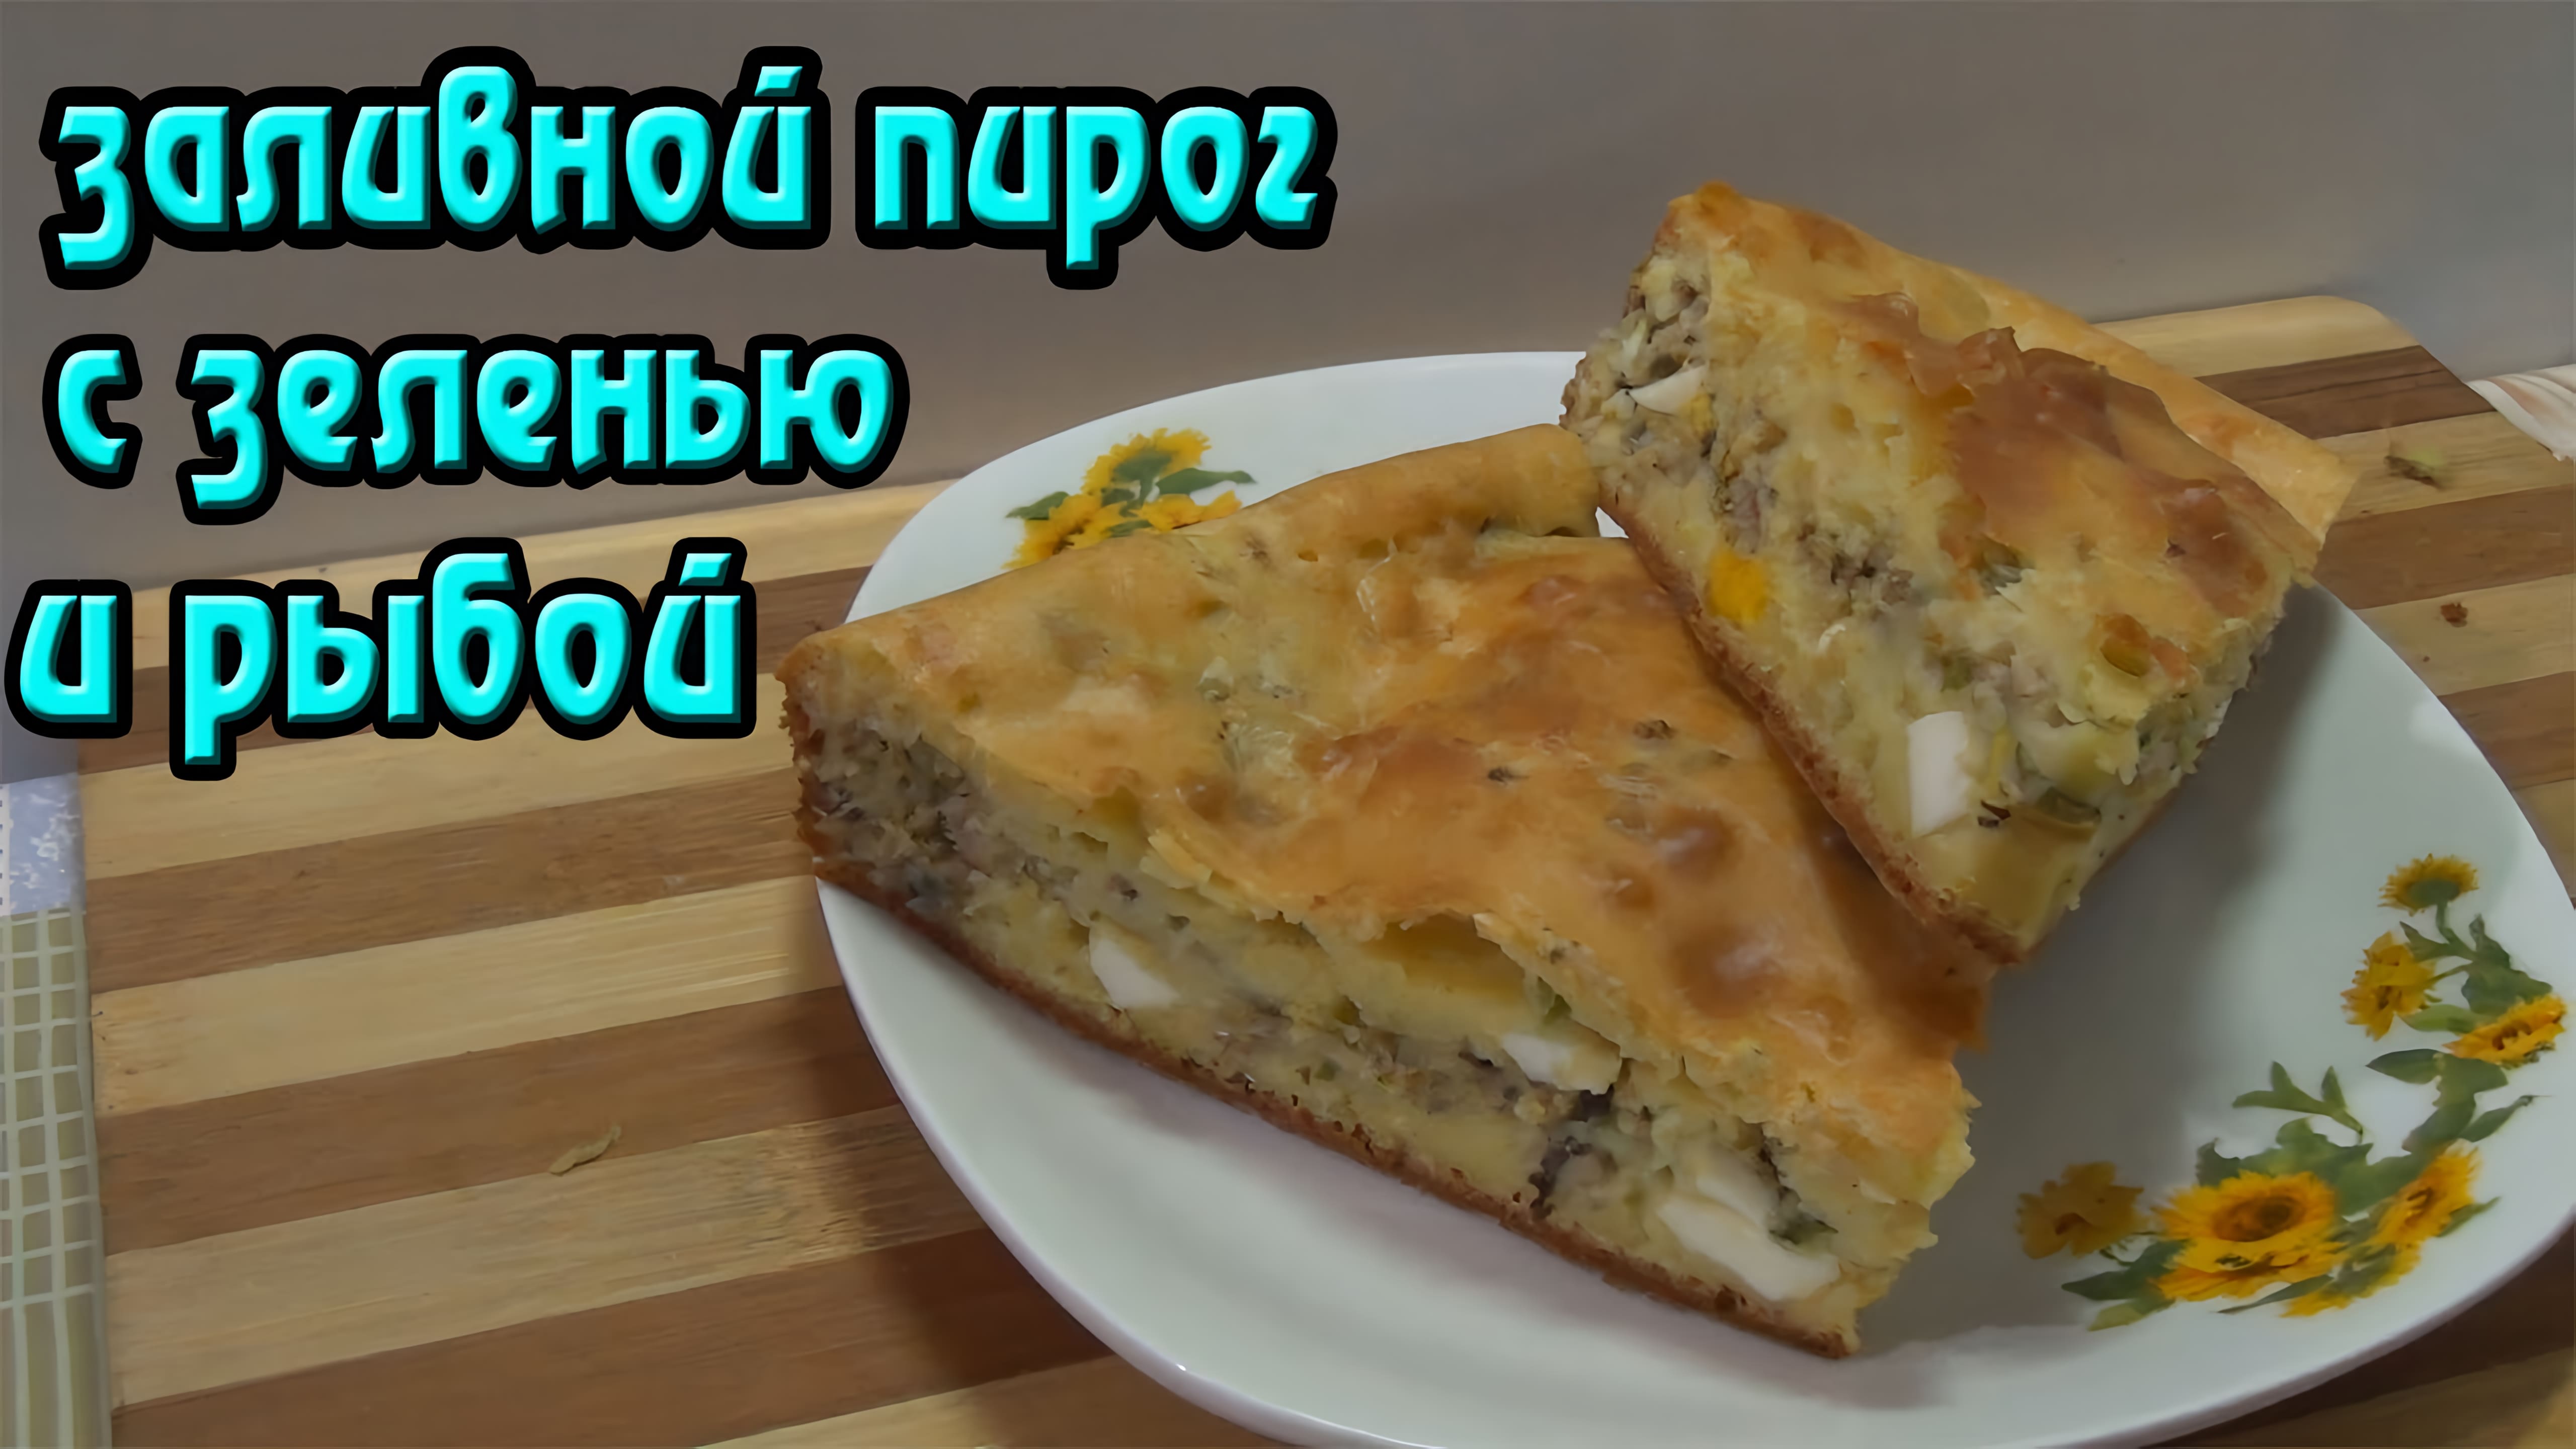 Видео: Быстрый и простой рецепт заливного пирога с рыбой и зеленью.